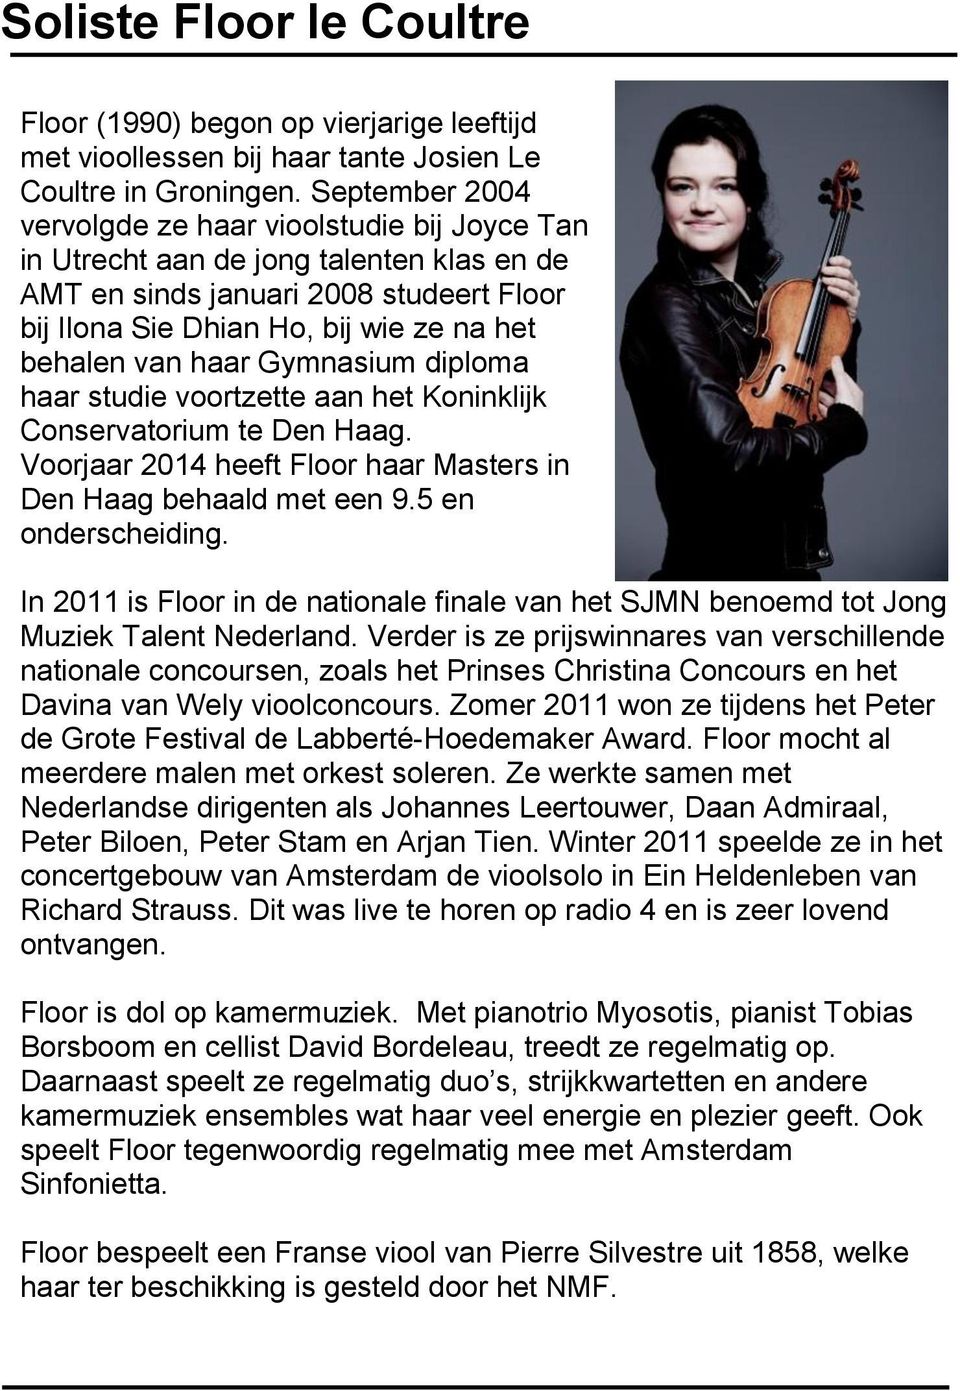 haar Gymnasium diploma haar studie voortzette aan het Koninklijk Conservatorium te Den Haag. Voorjaar 2014 heeft Floor haar Masters in Den Haag behaald met een 9.5 en onderscheiding.